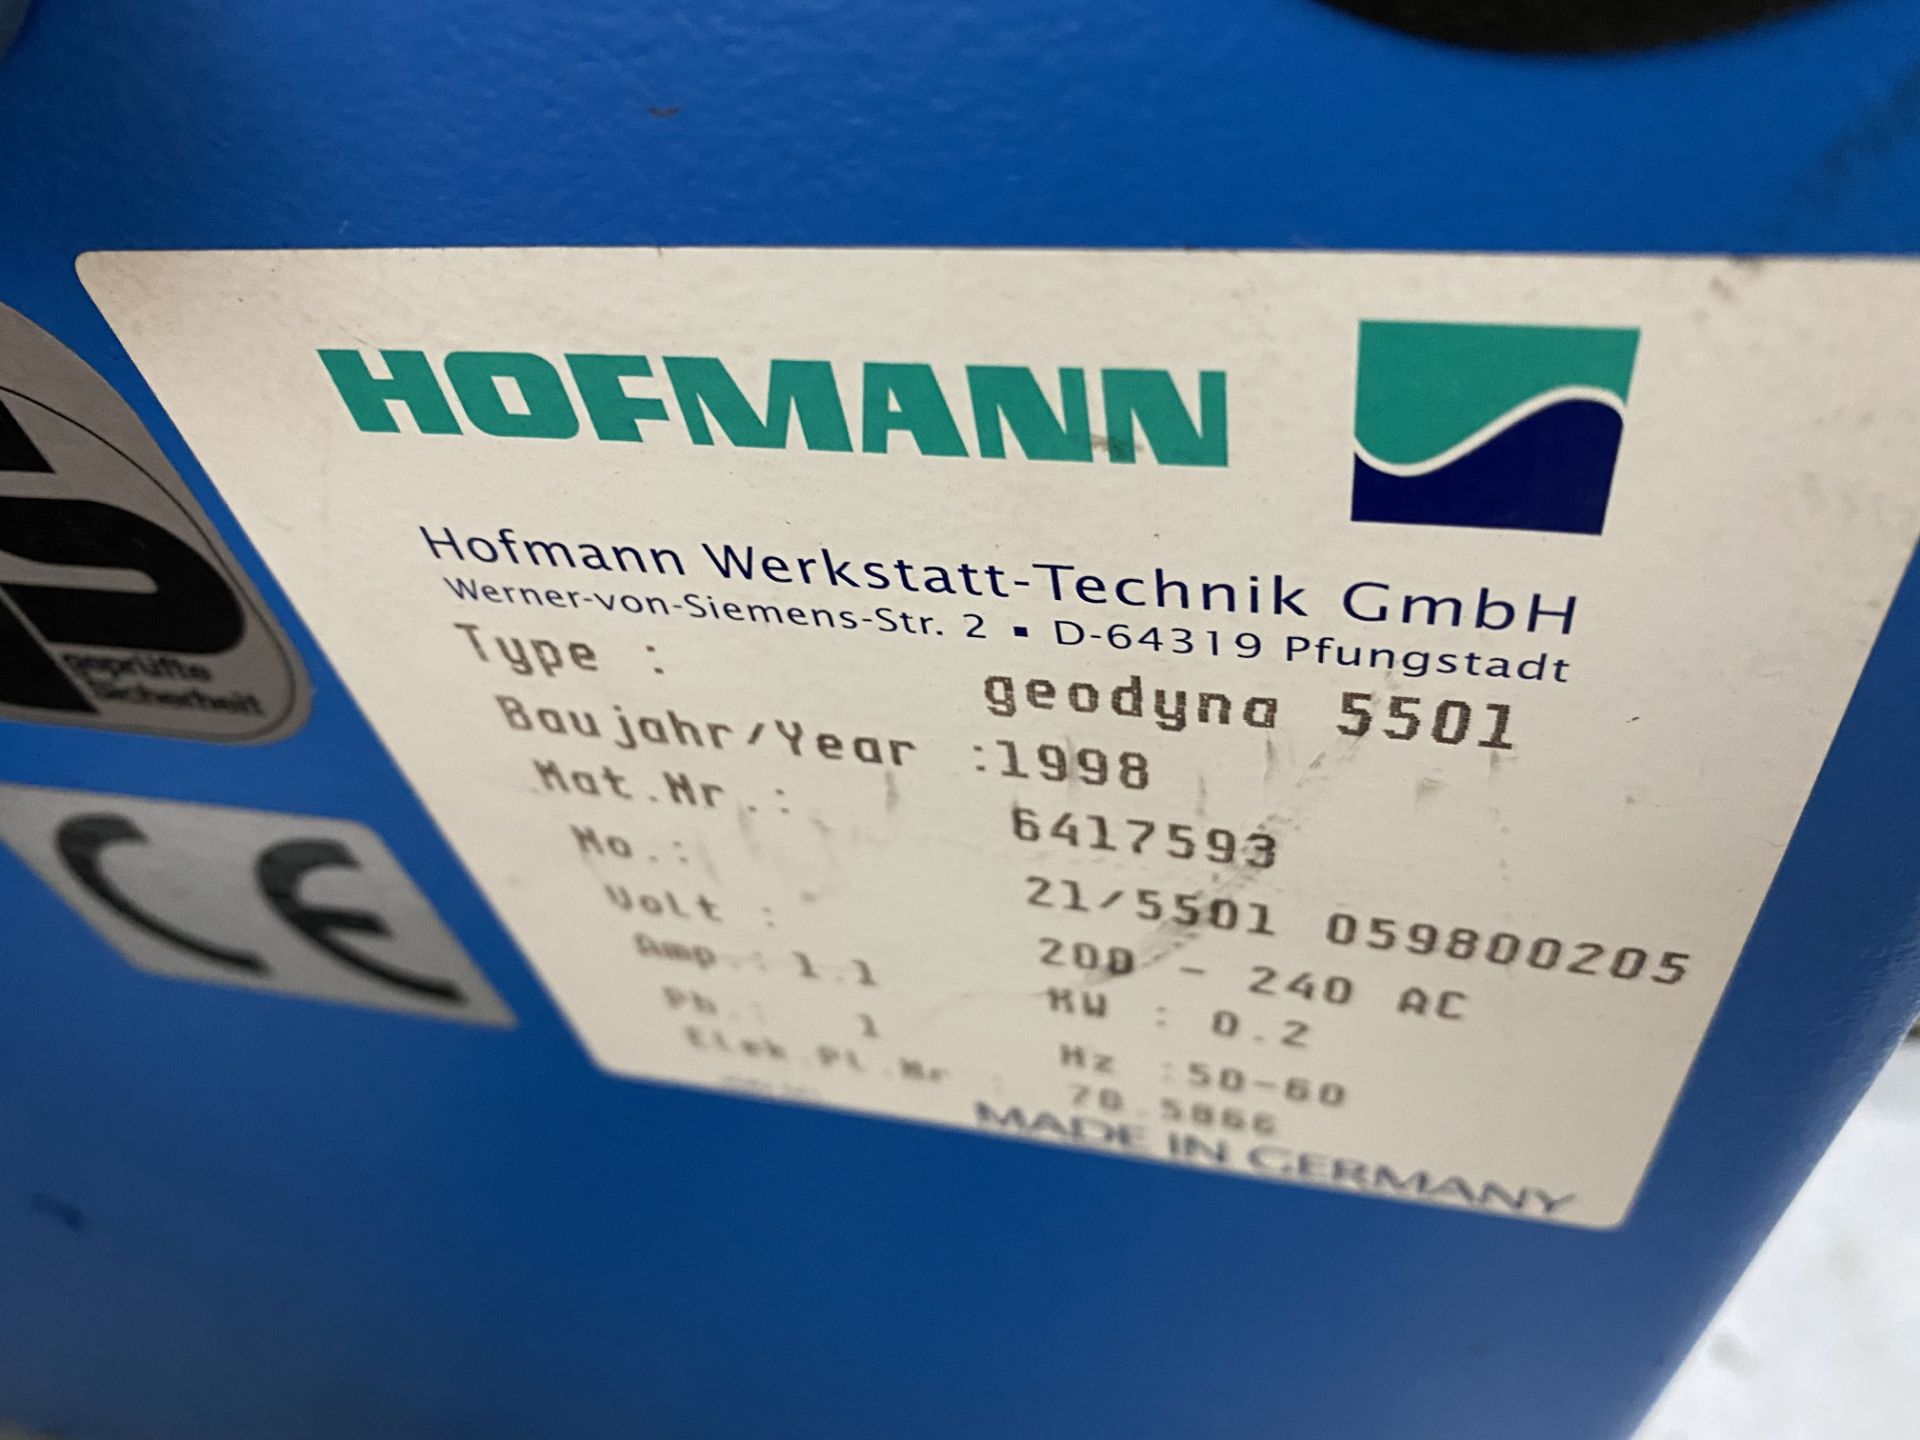 Hofmann Geodyna 5501 wheel balancer, 240 volts. S/No. 6417593. (1998). - Bild 4 aus 6